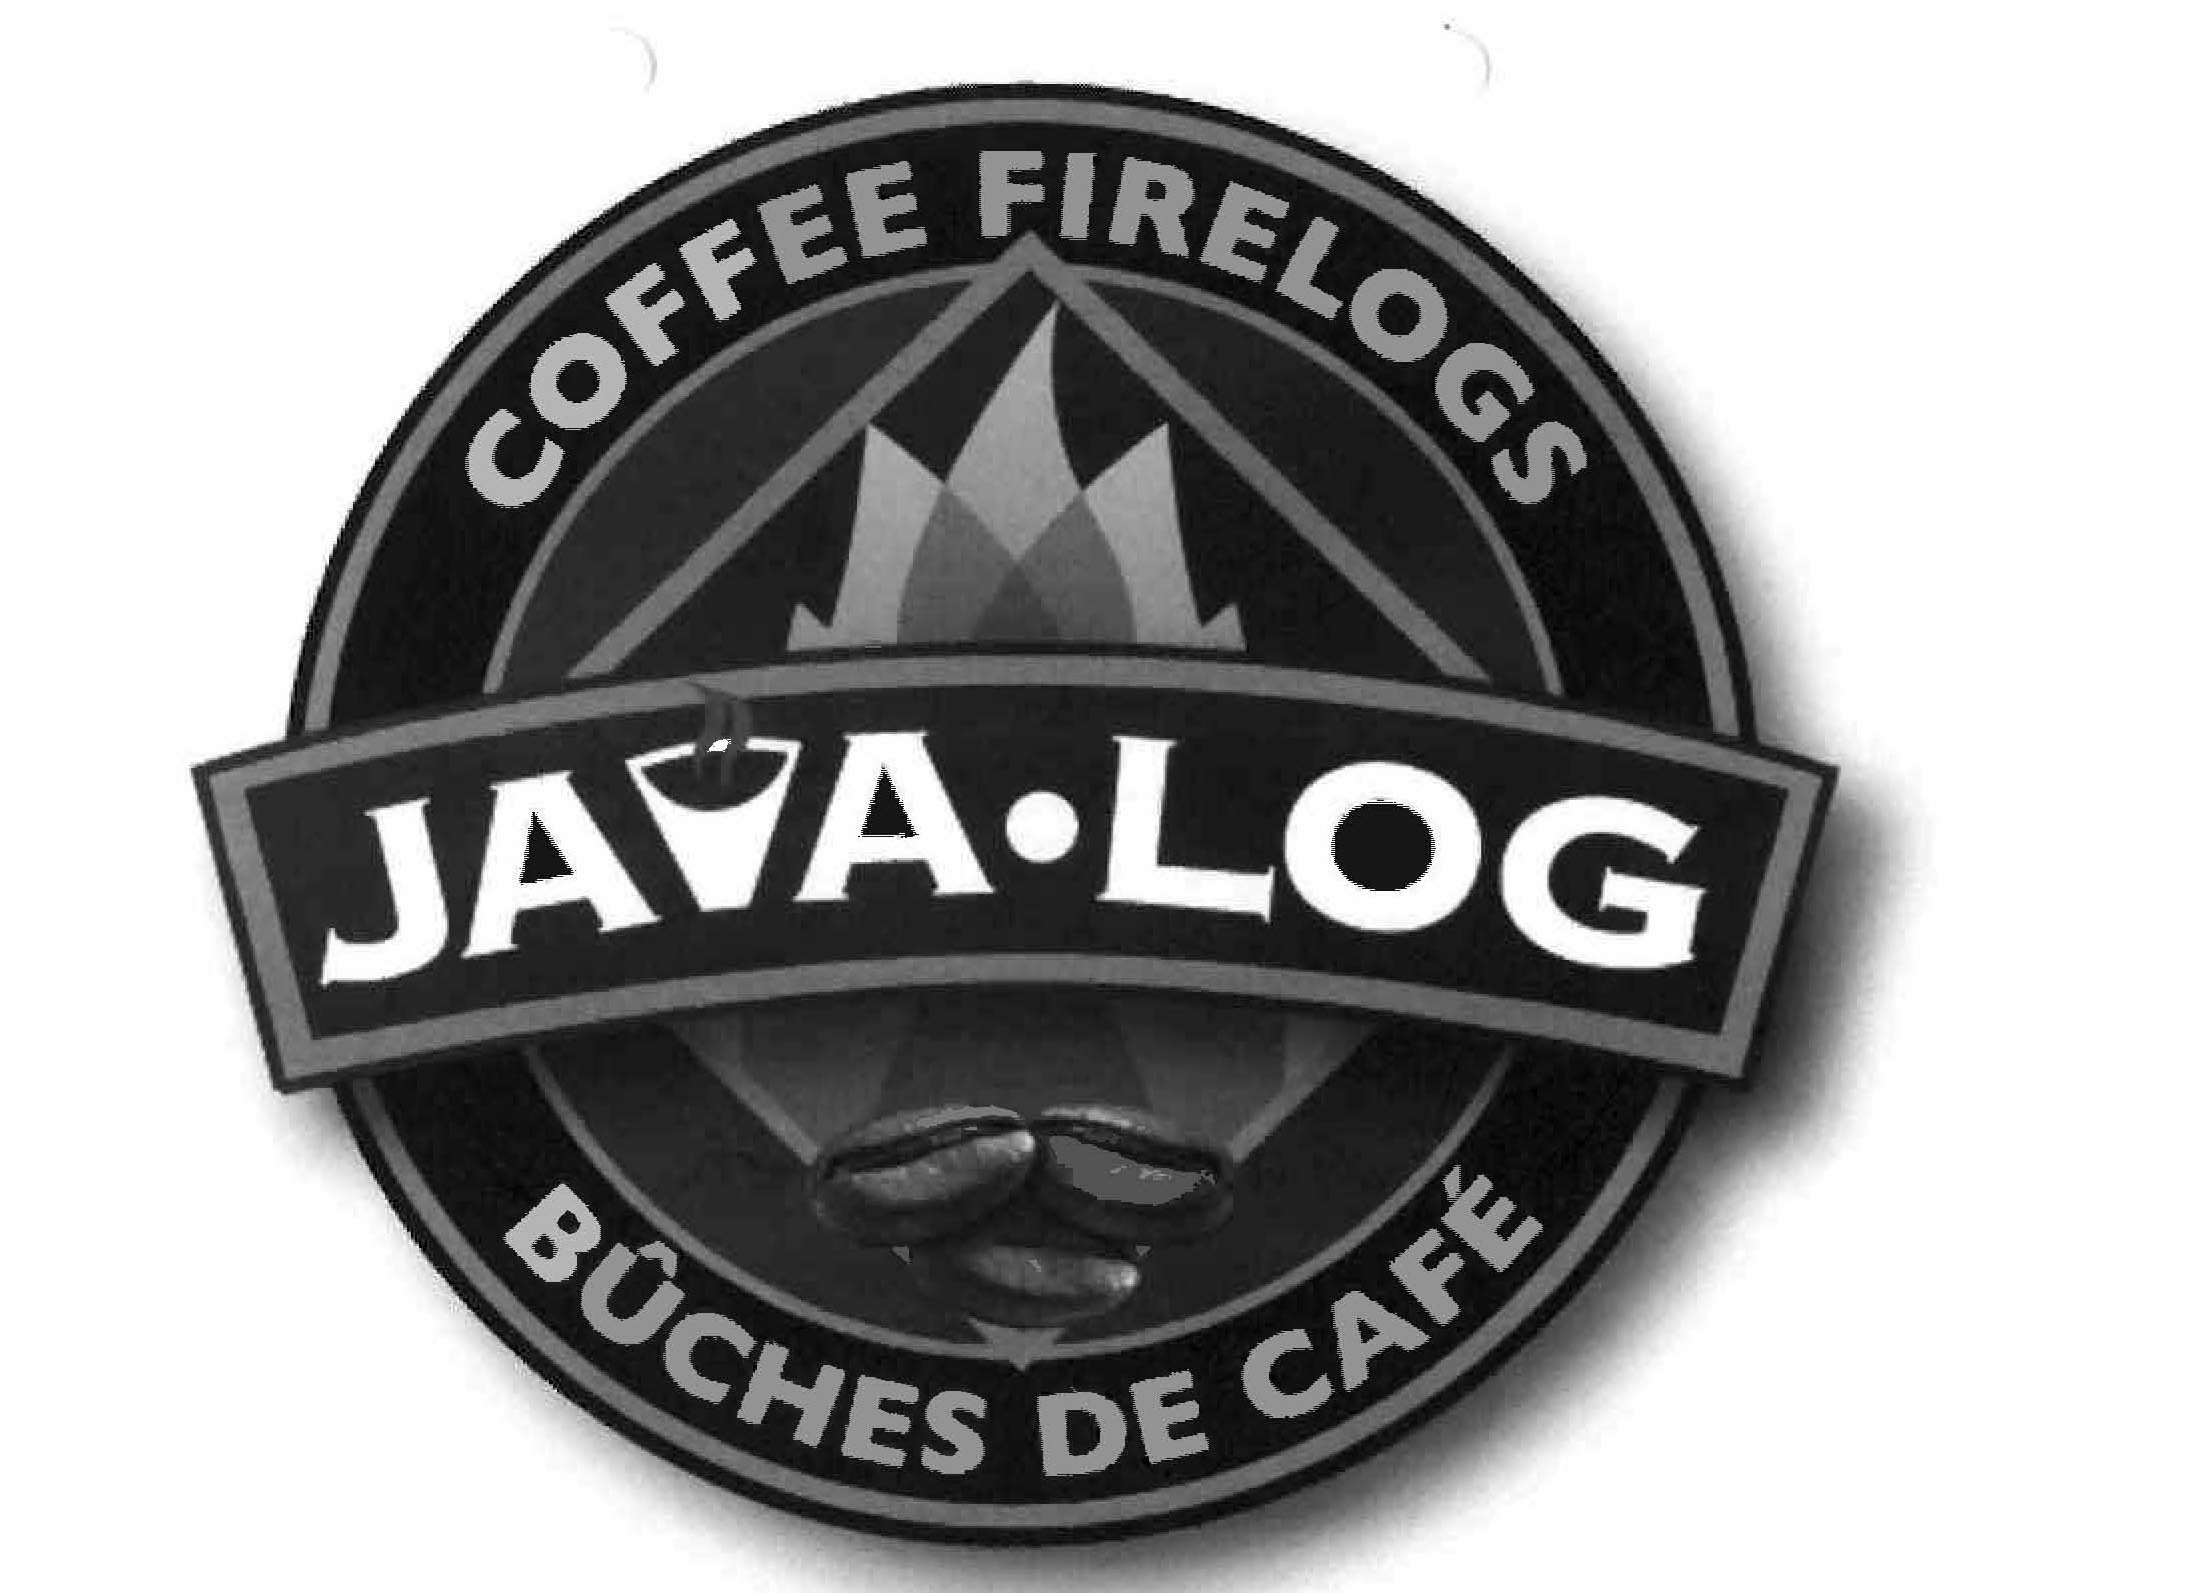  JAVA Â· LOG COFFEE FIRELOGS BÃCHES DE CAFÃ